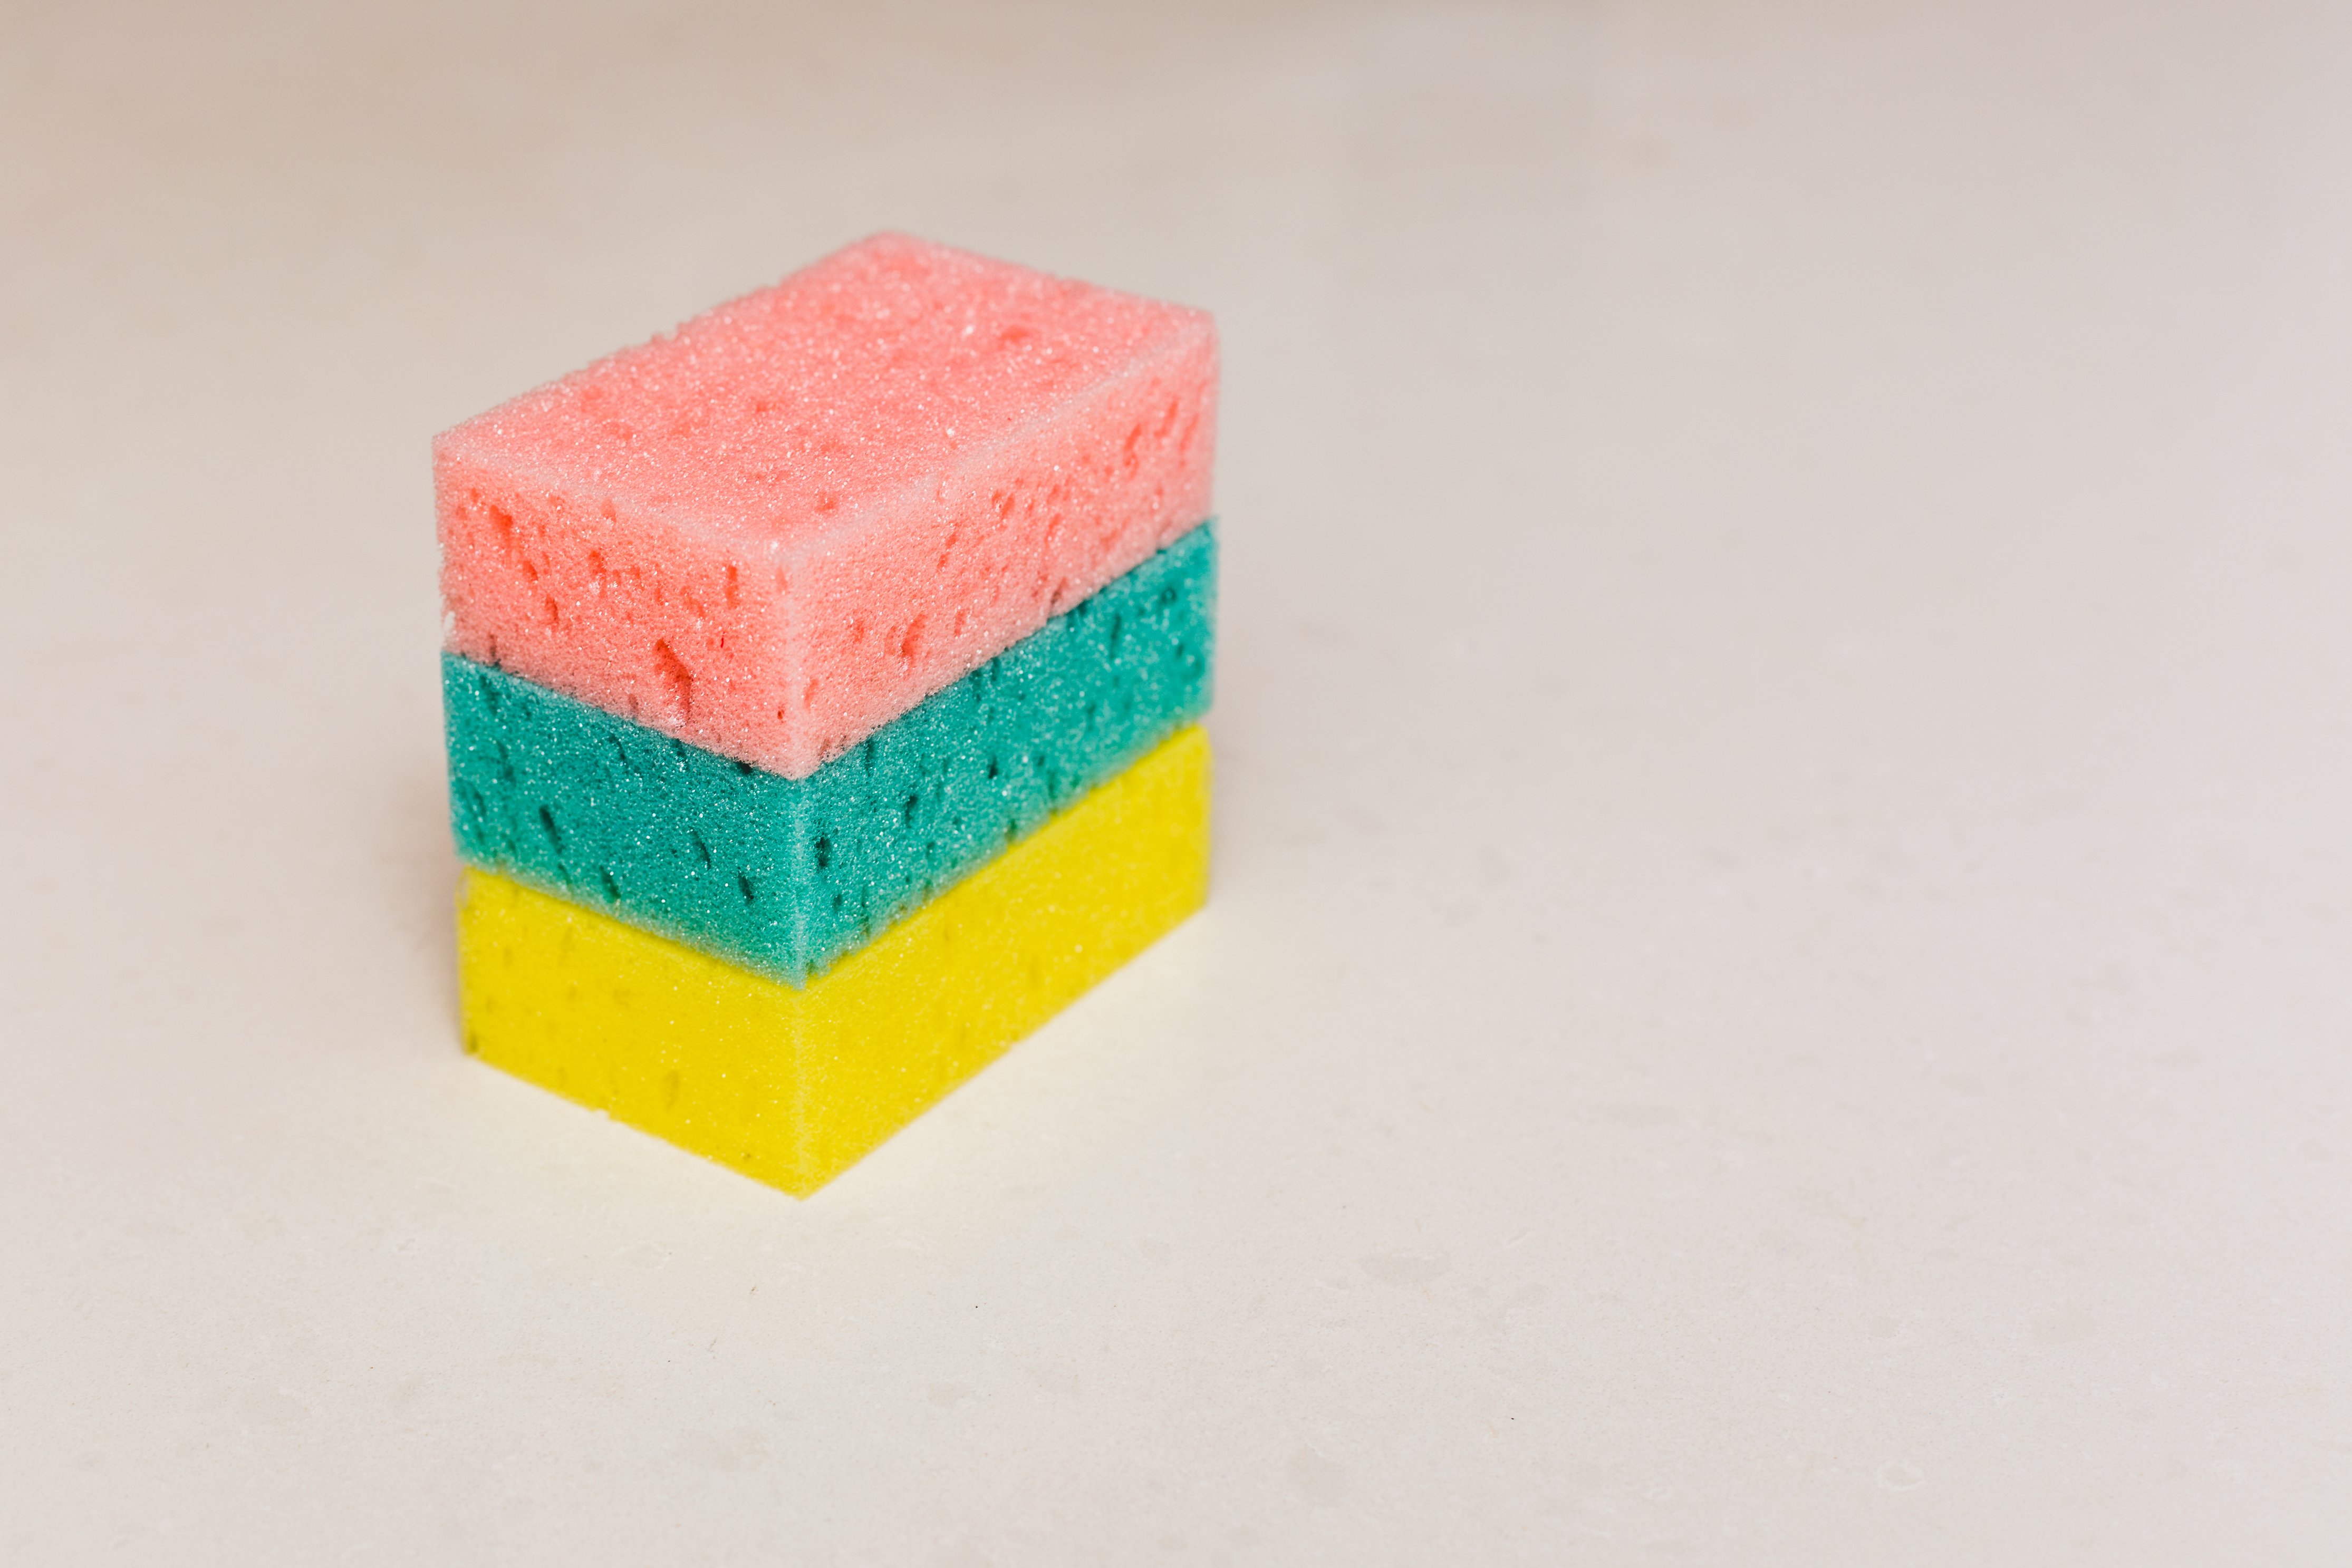 clean sponge in microwave